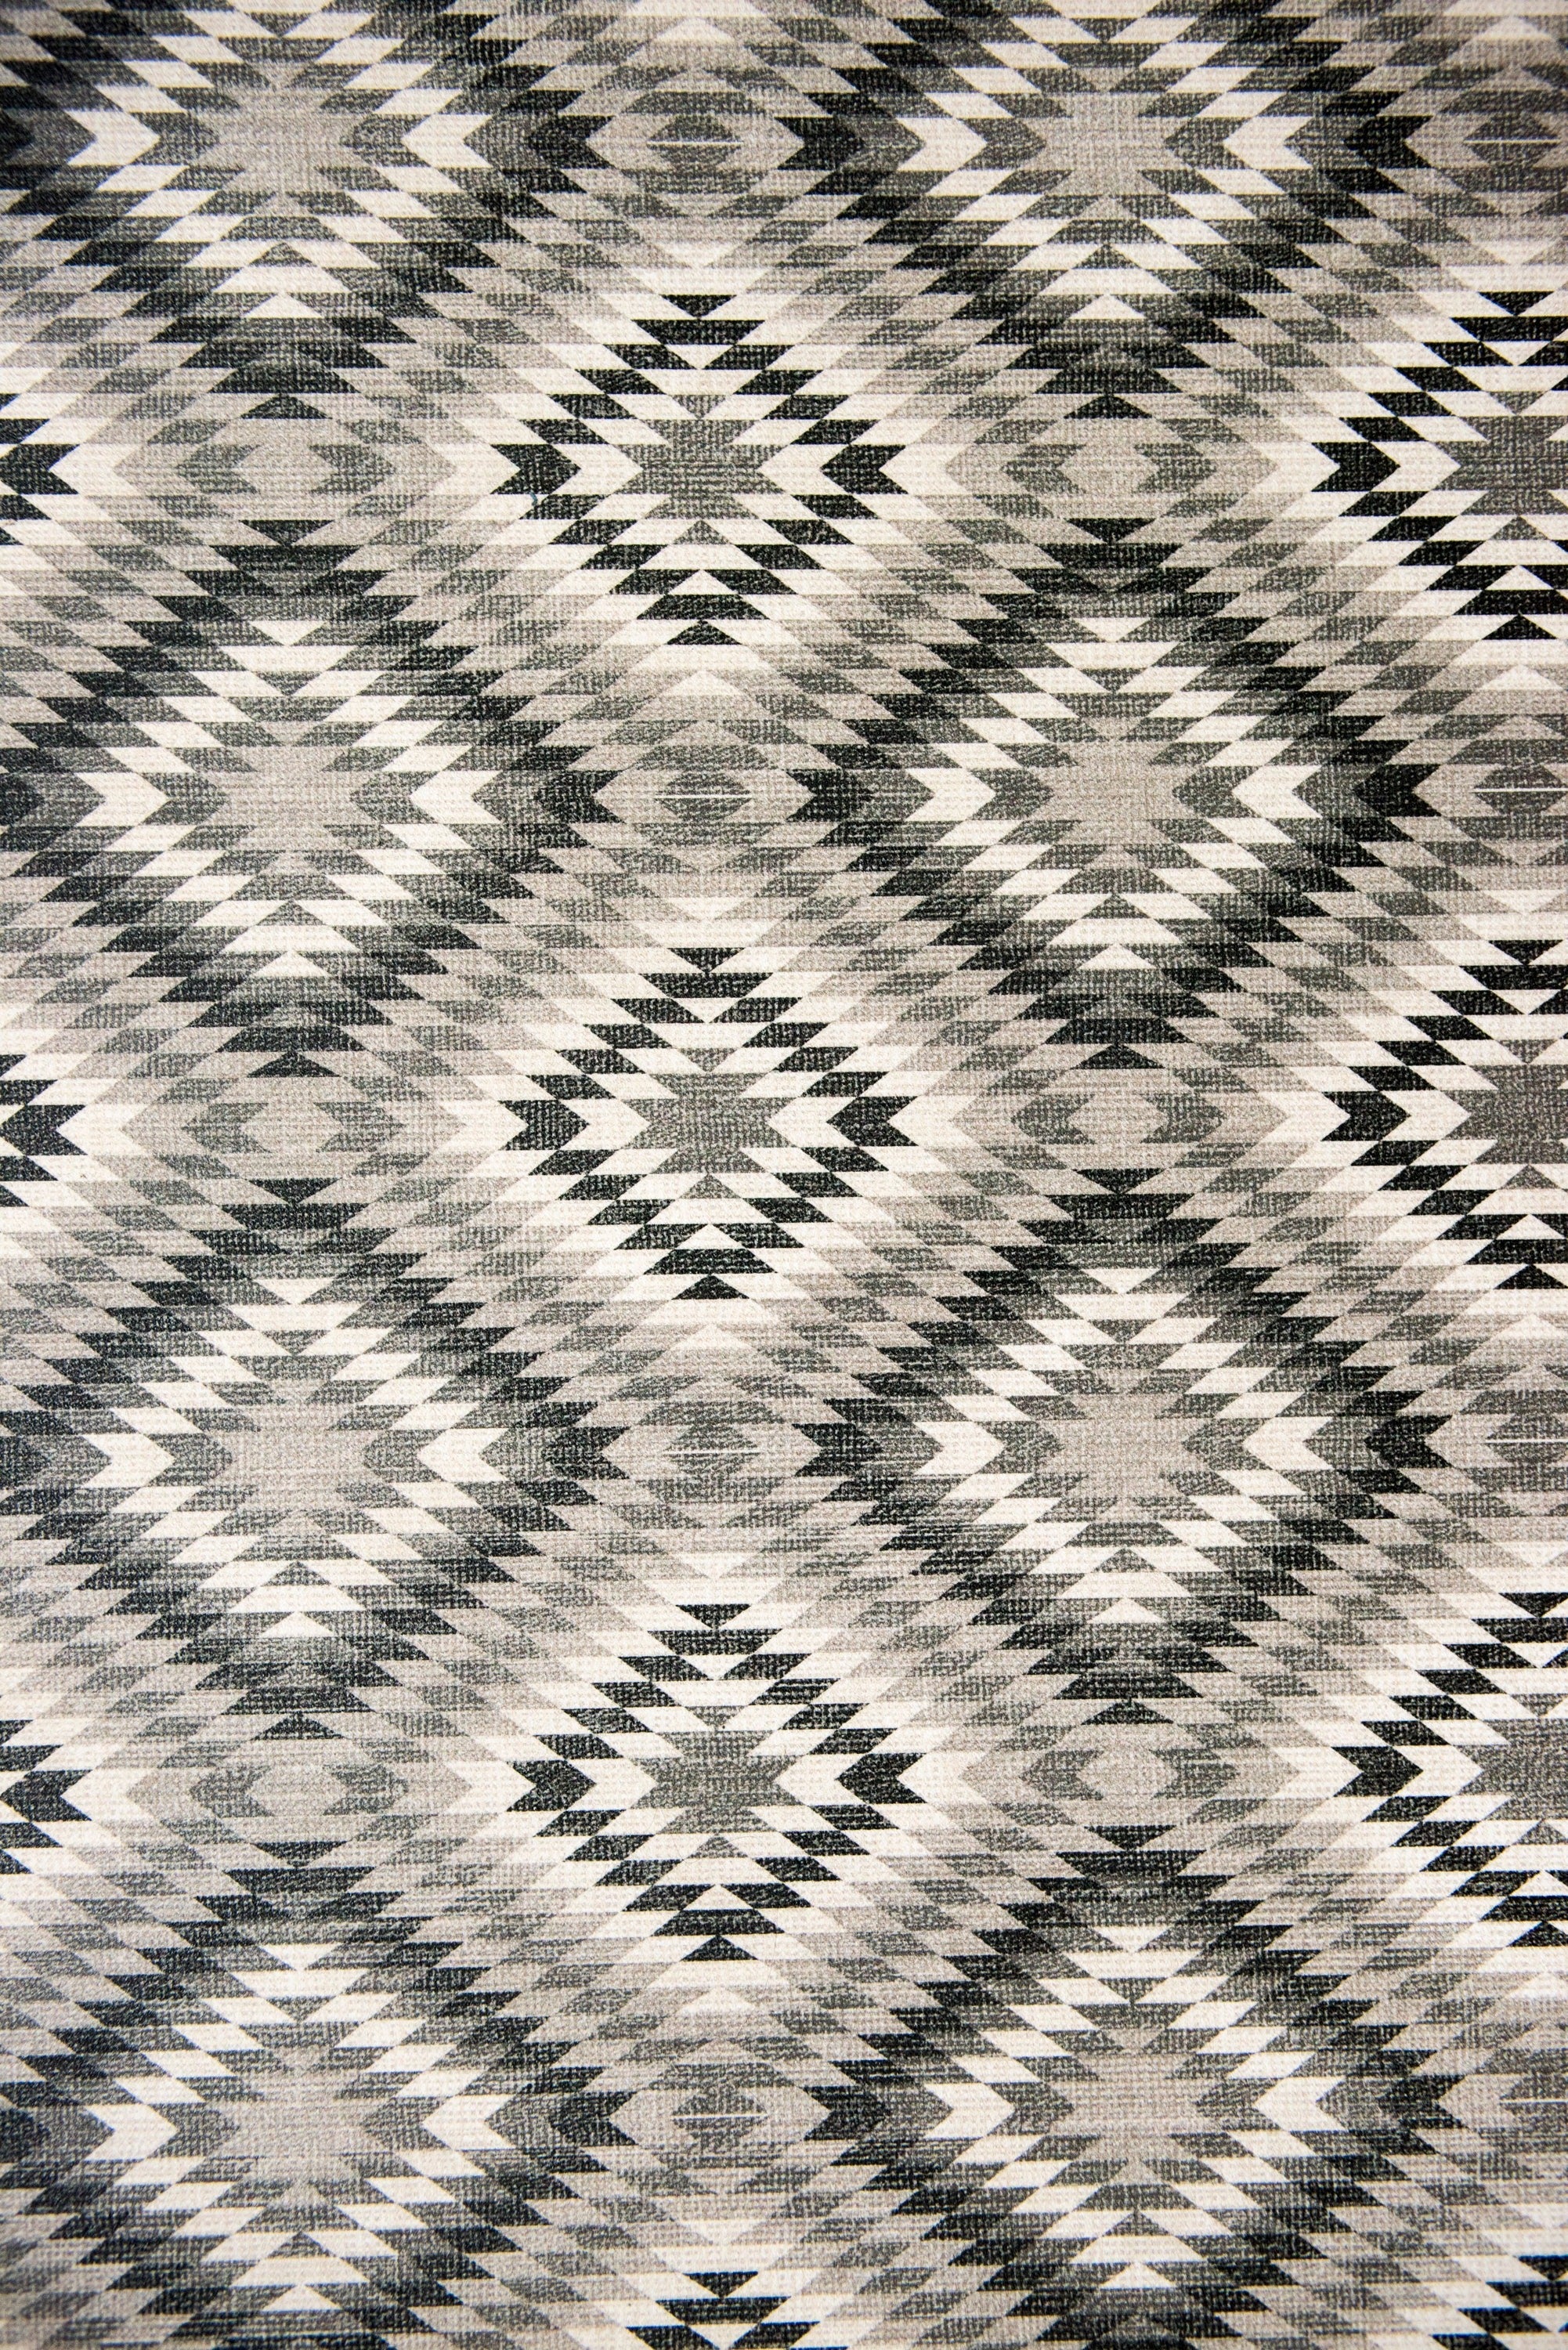 Beija Flor Nordic Textile Brown Diamond Floor Mat (Buy 2 Get 1 Free!) Rugs Beija Flor Brand_Beija Flor CLEAN OUT SALE Flatwoven Home_Decor Home_Floor Mats NordicTextileBeilaFlor3